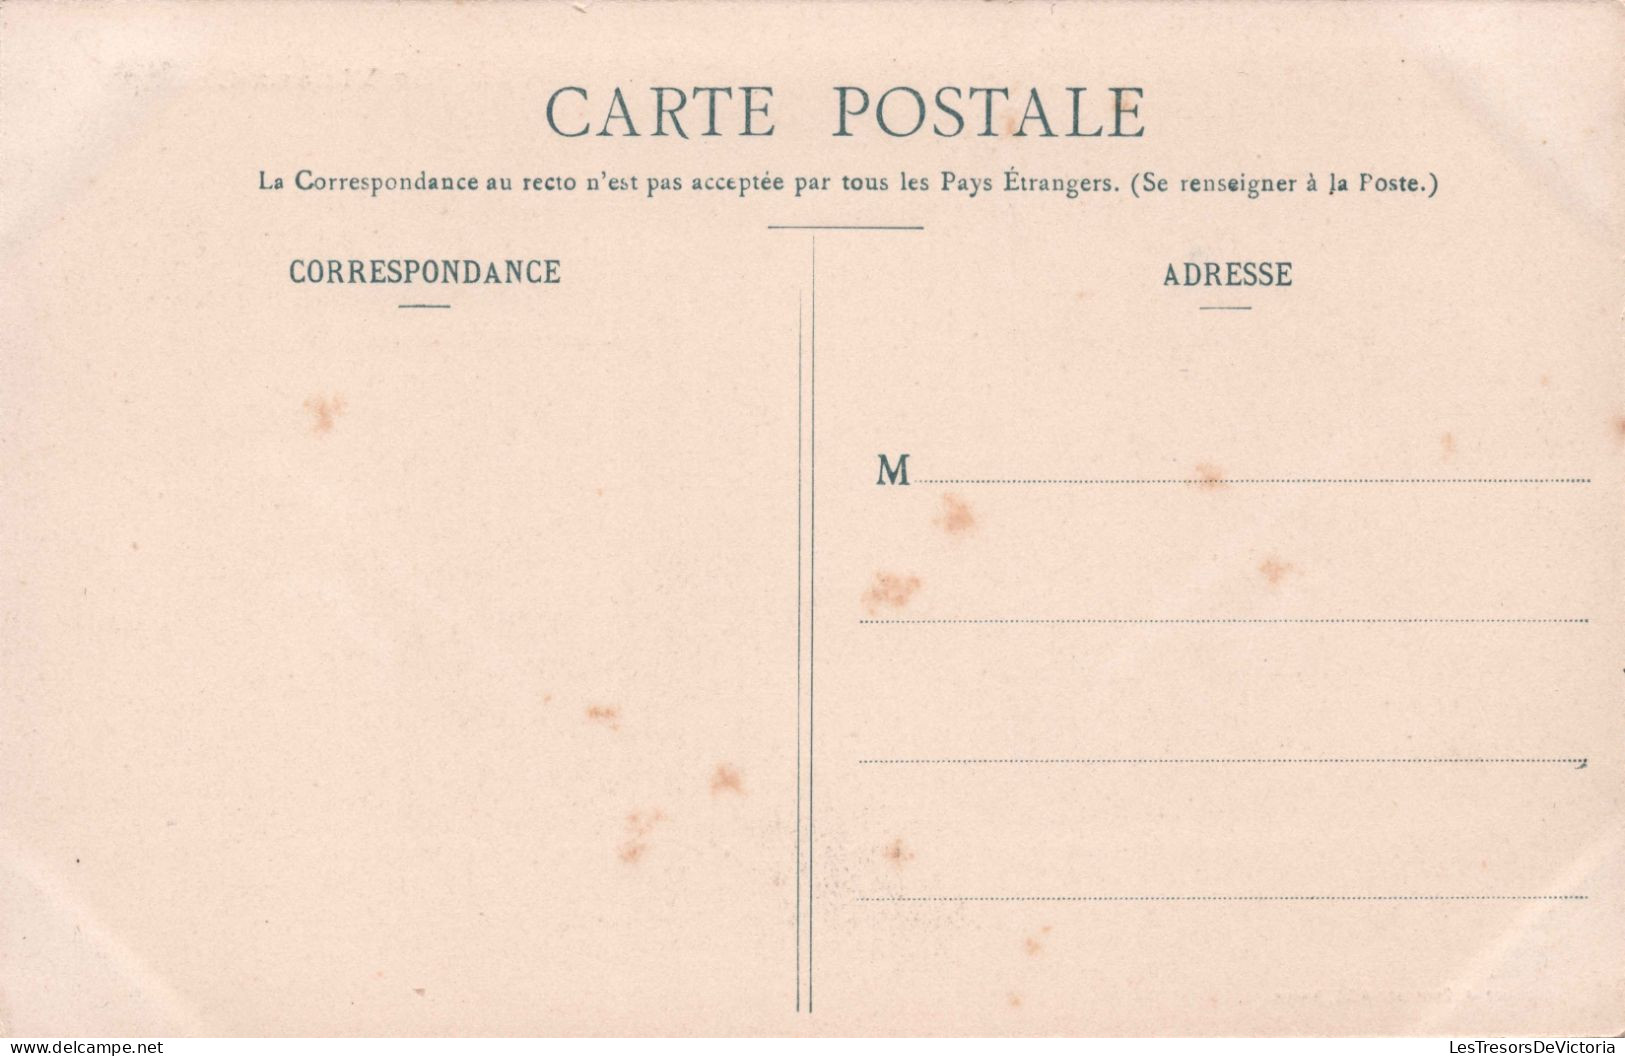 METIER - La Vie Aux Champs - Couple Qui Brule Les Mauvaises Herbes - Brouette - Carte Postale Ancienne - Paysans